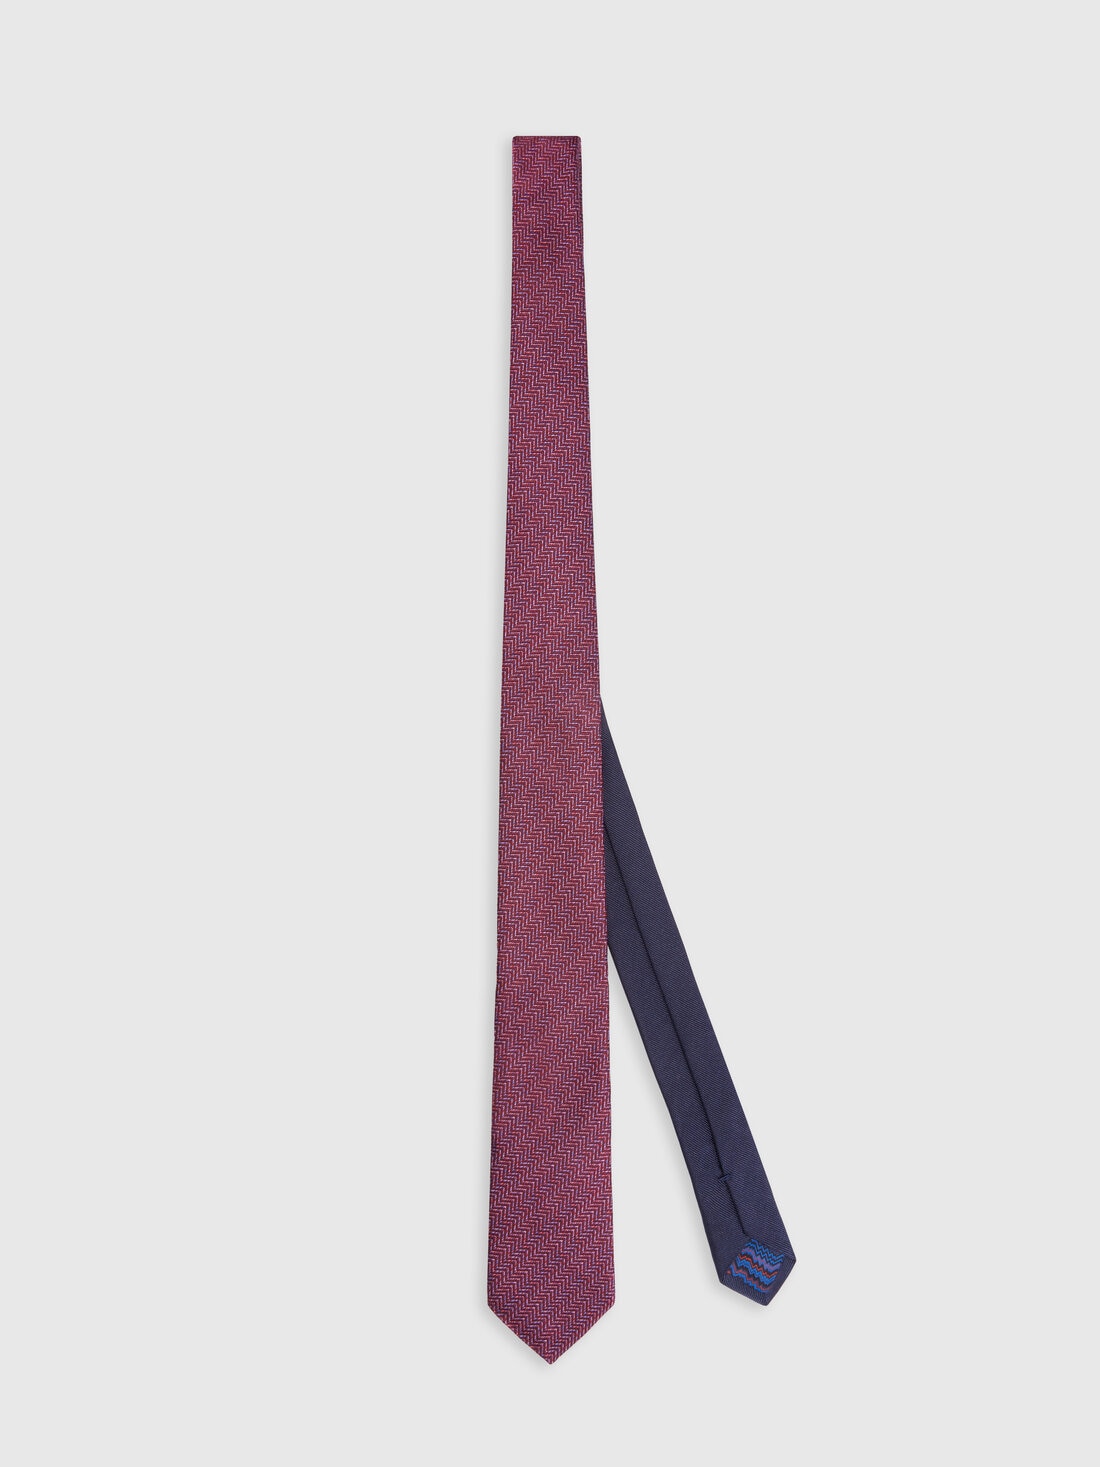 Cravatta in seta chevron, Multicolore  - 8053147141947 - 0